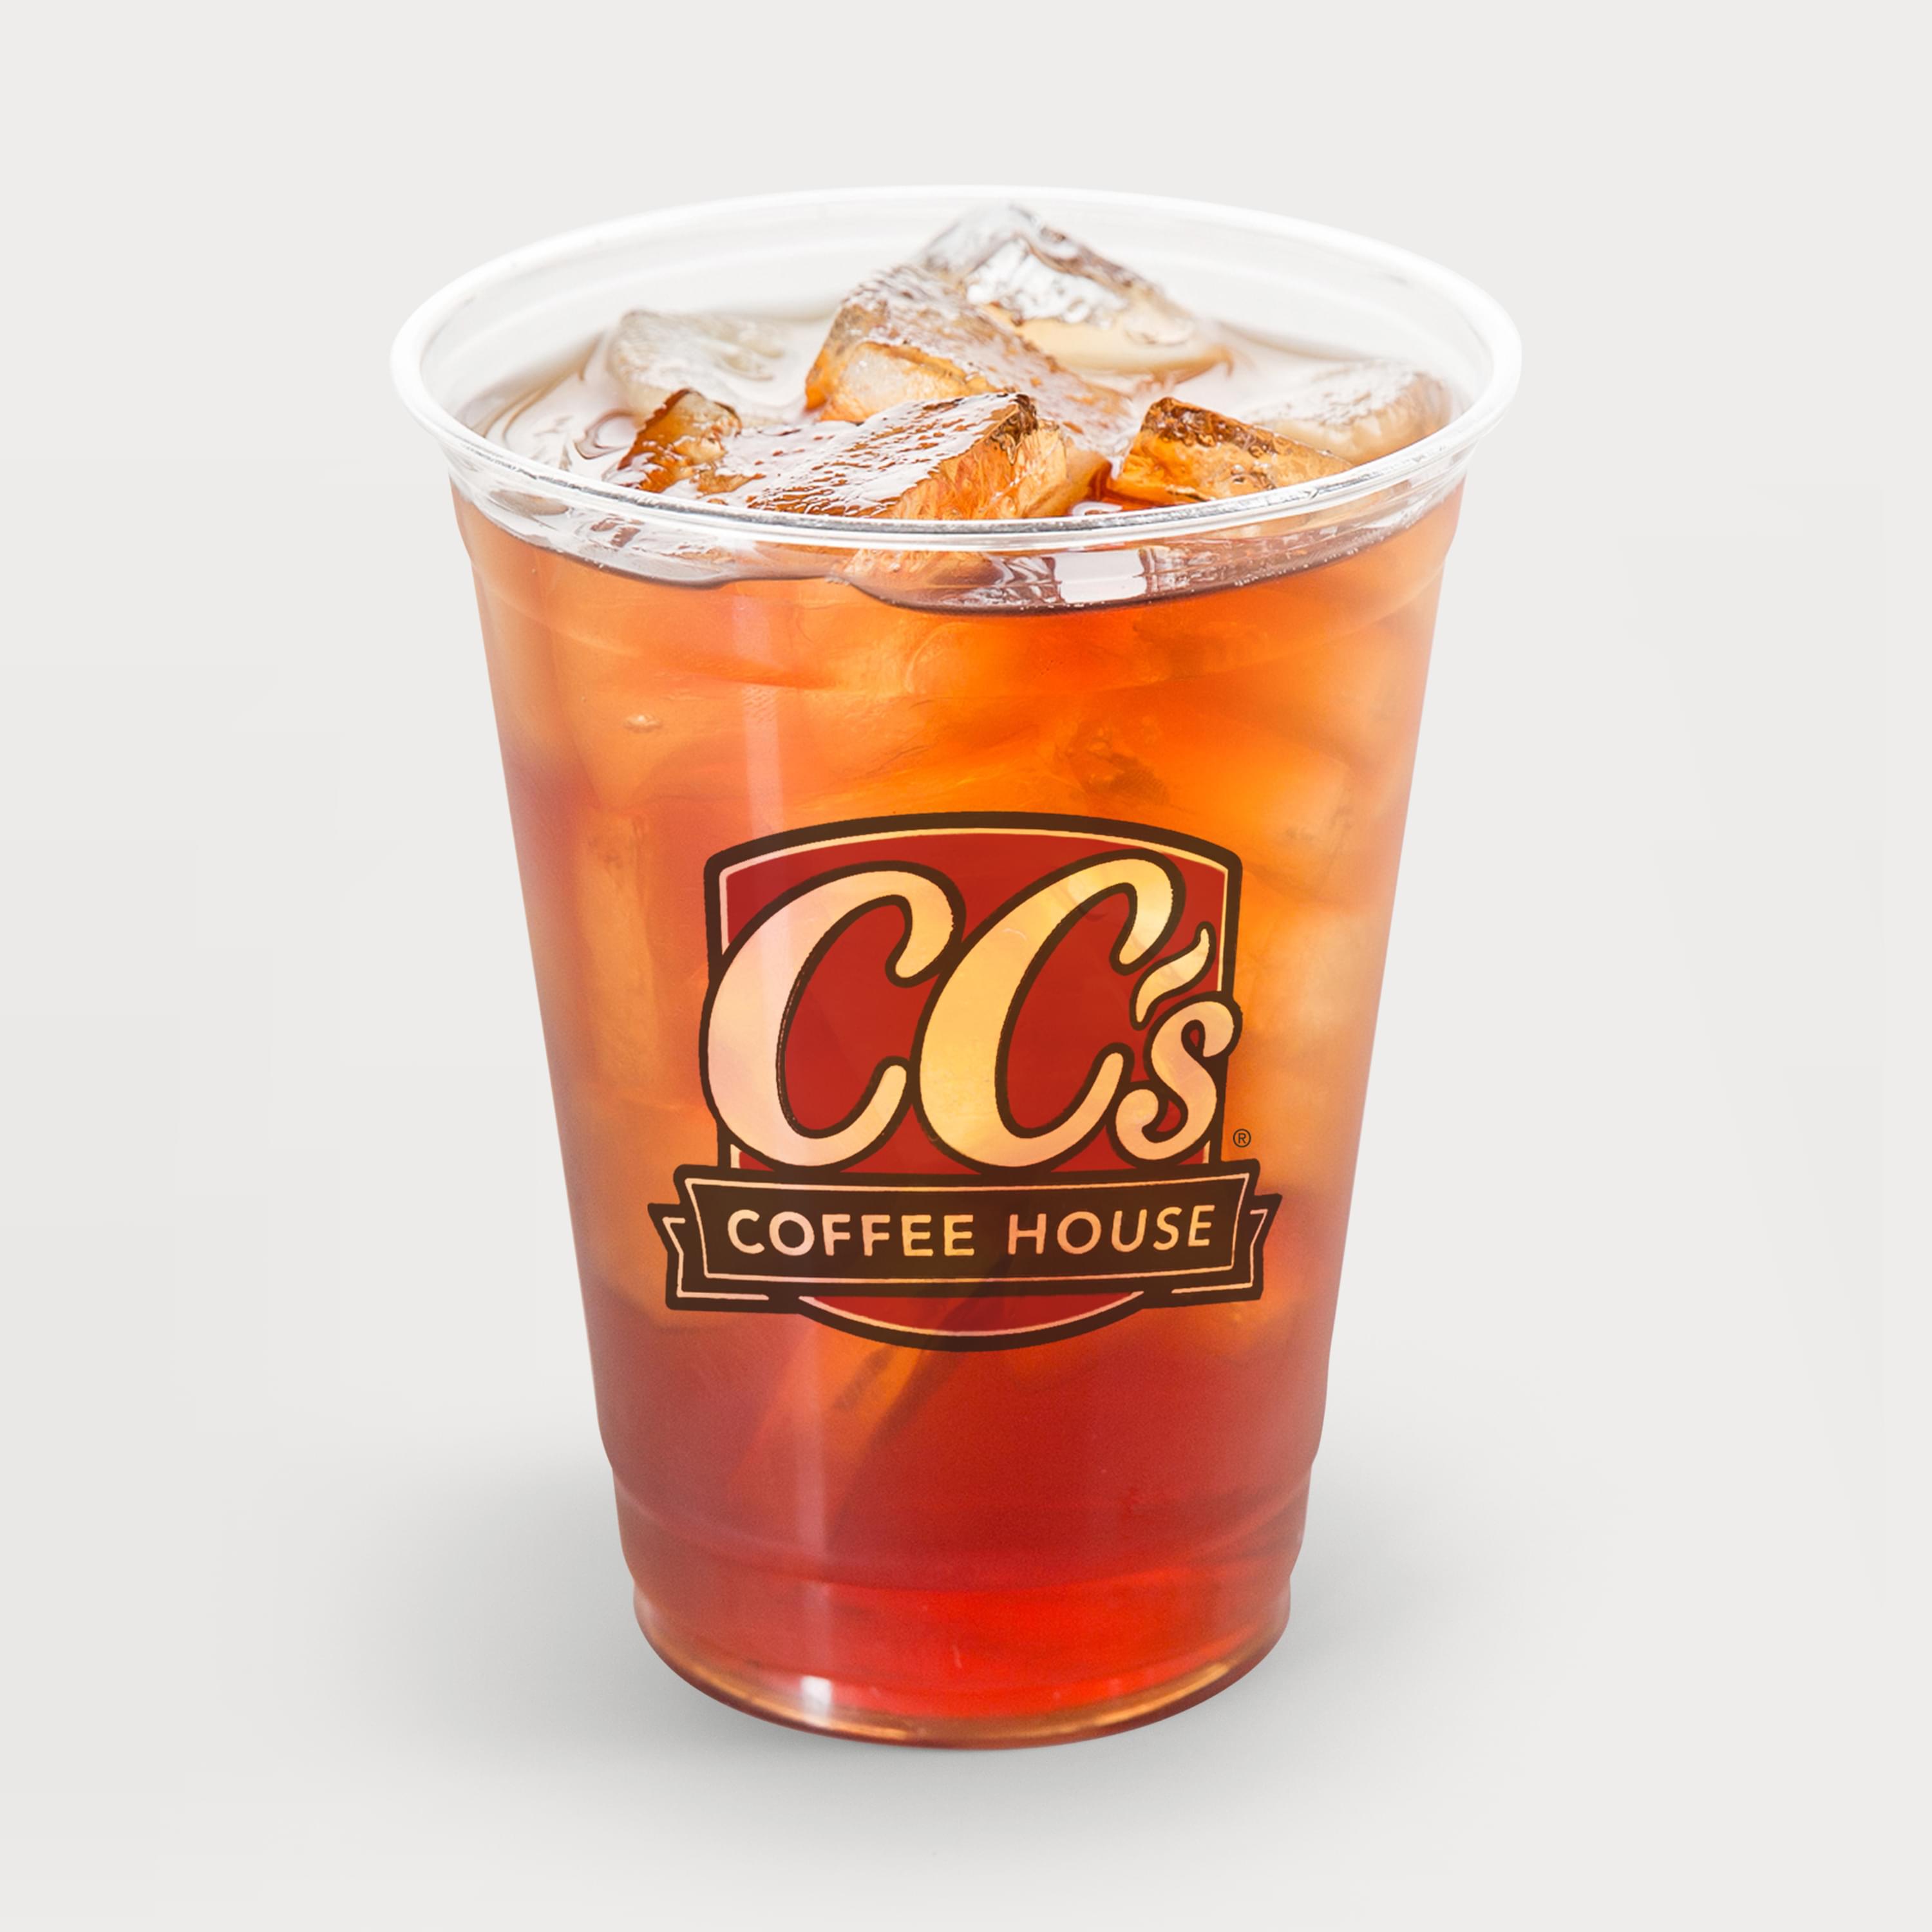 A cup of CC's iced tea